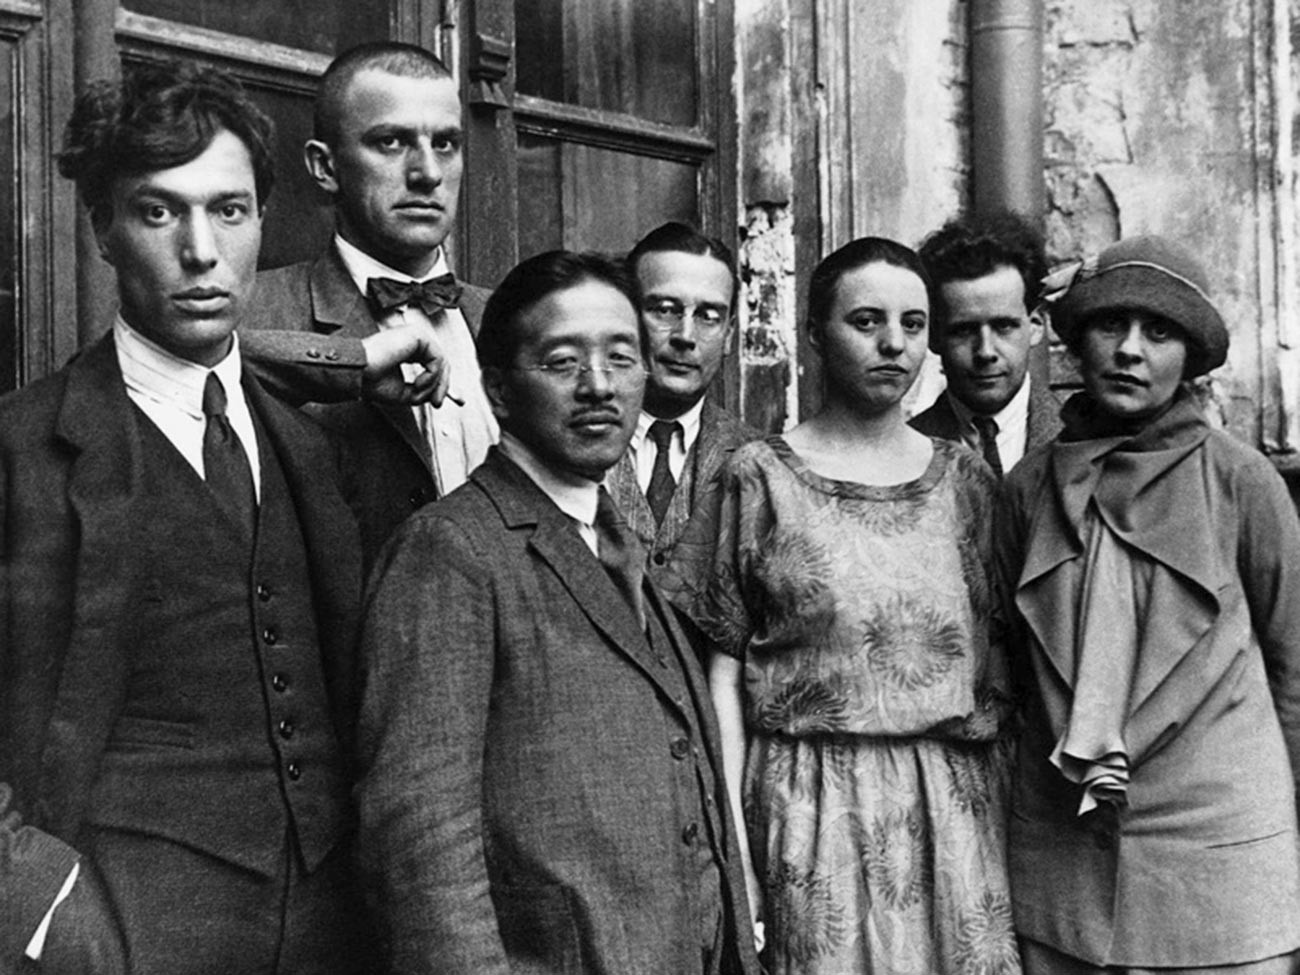 From left to right: Boris Pasternak, Vladimir Mayakovsky, Tamizi Naito, diplomat Arseny Voznesensky, Olga Tretyakova, Sergei Eisenstein and Lilya Brik.